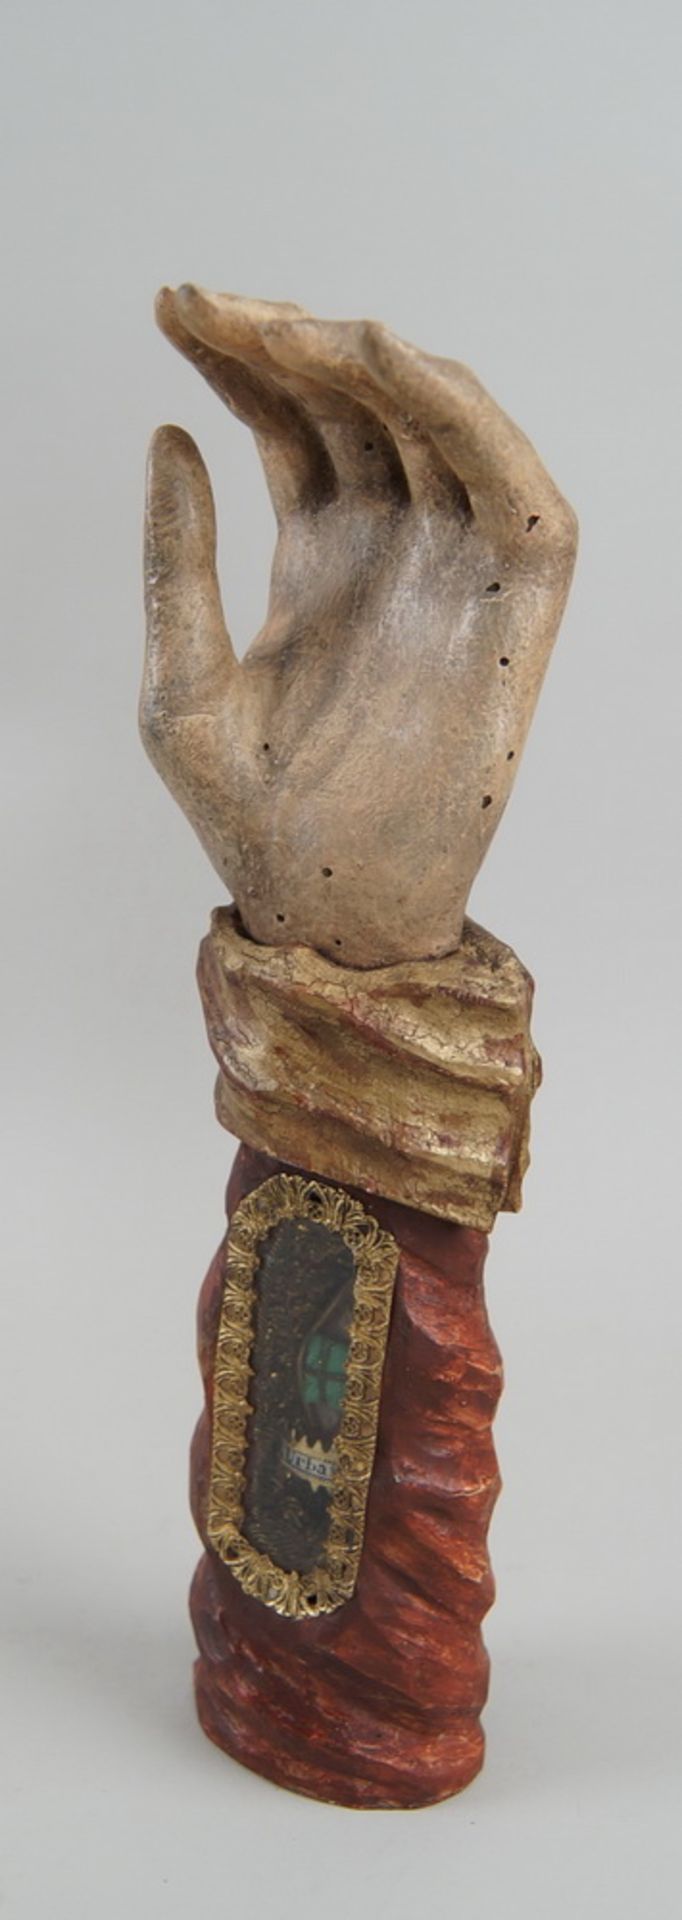 Grosse Reliquienhand, Holz geschnitzt und gefasst, Reliquie hinter Glas, St. Urban, H 31cm - Bild 3 aus 6